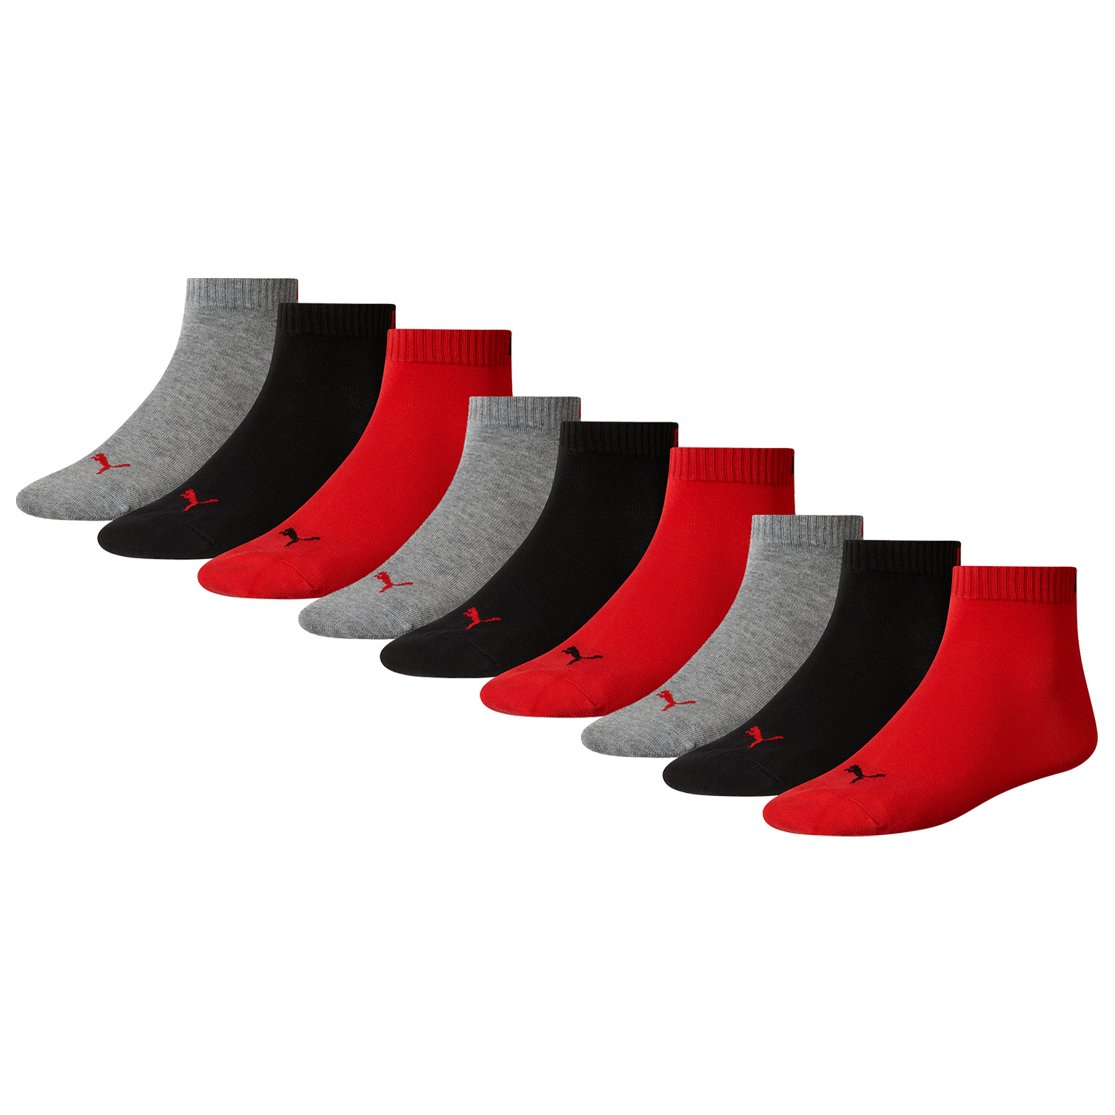 PUMA Unisex Quarter Socken Sportsocken 9er Pack Black/red 232-35/38